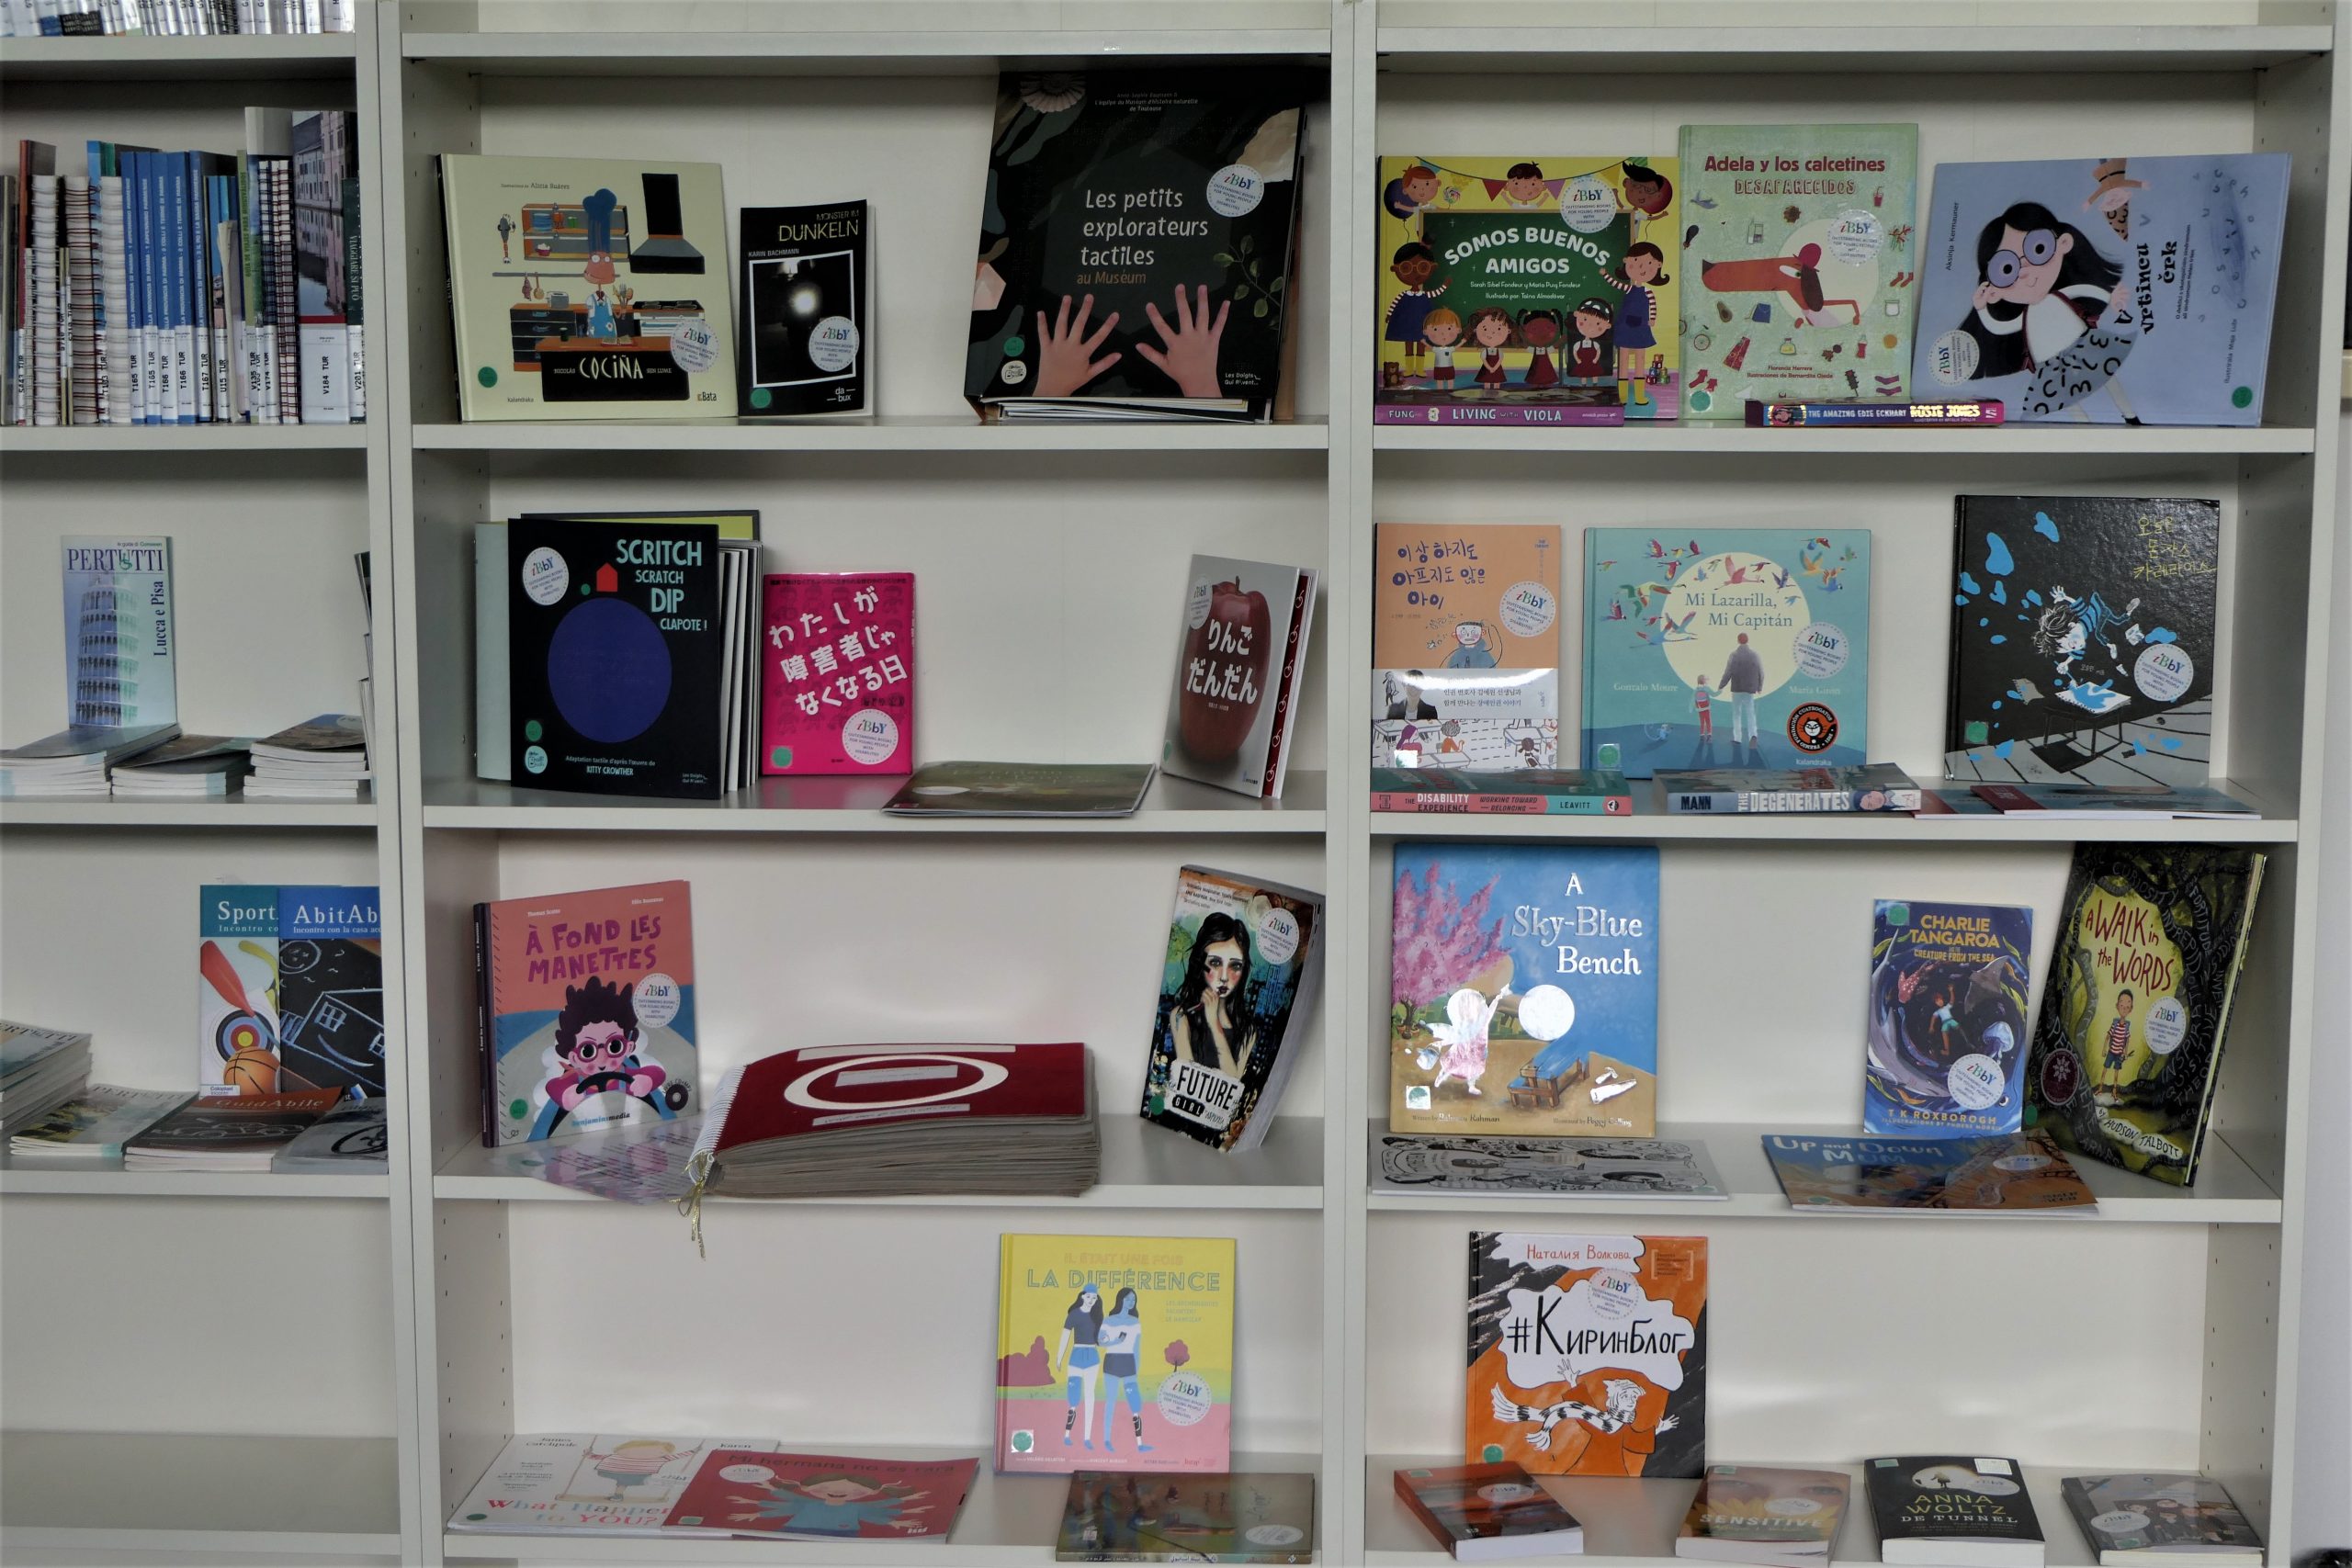 Al CDH la mostra Ibby con 40 libri da tutto il mondo sui temi della disabilità e della diversità